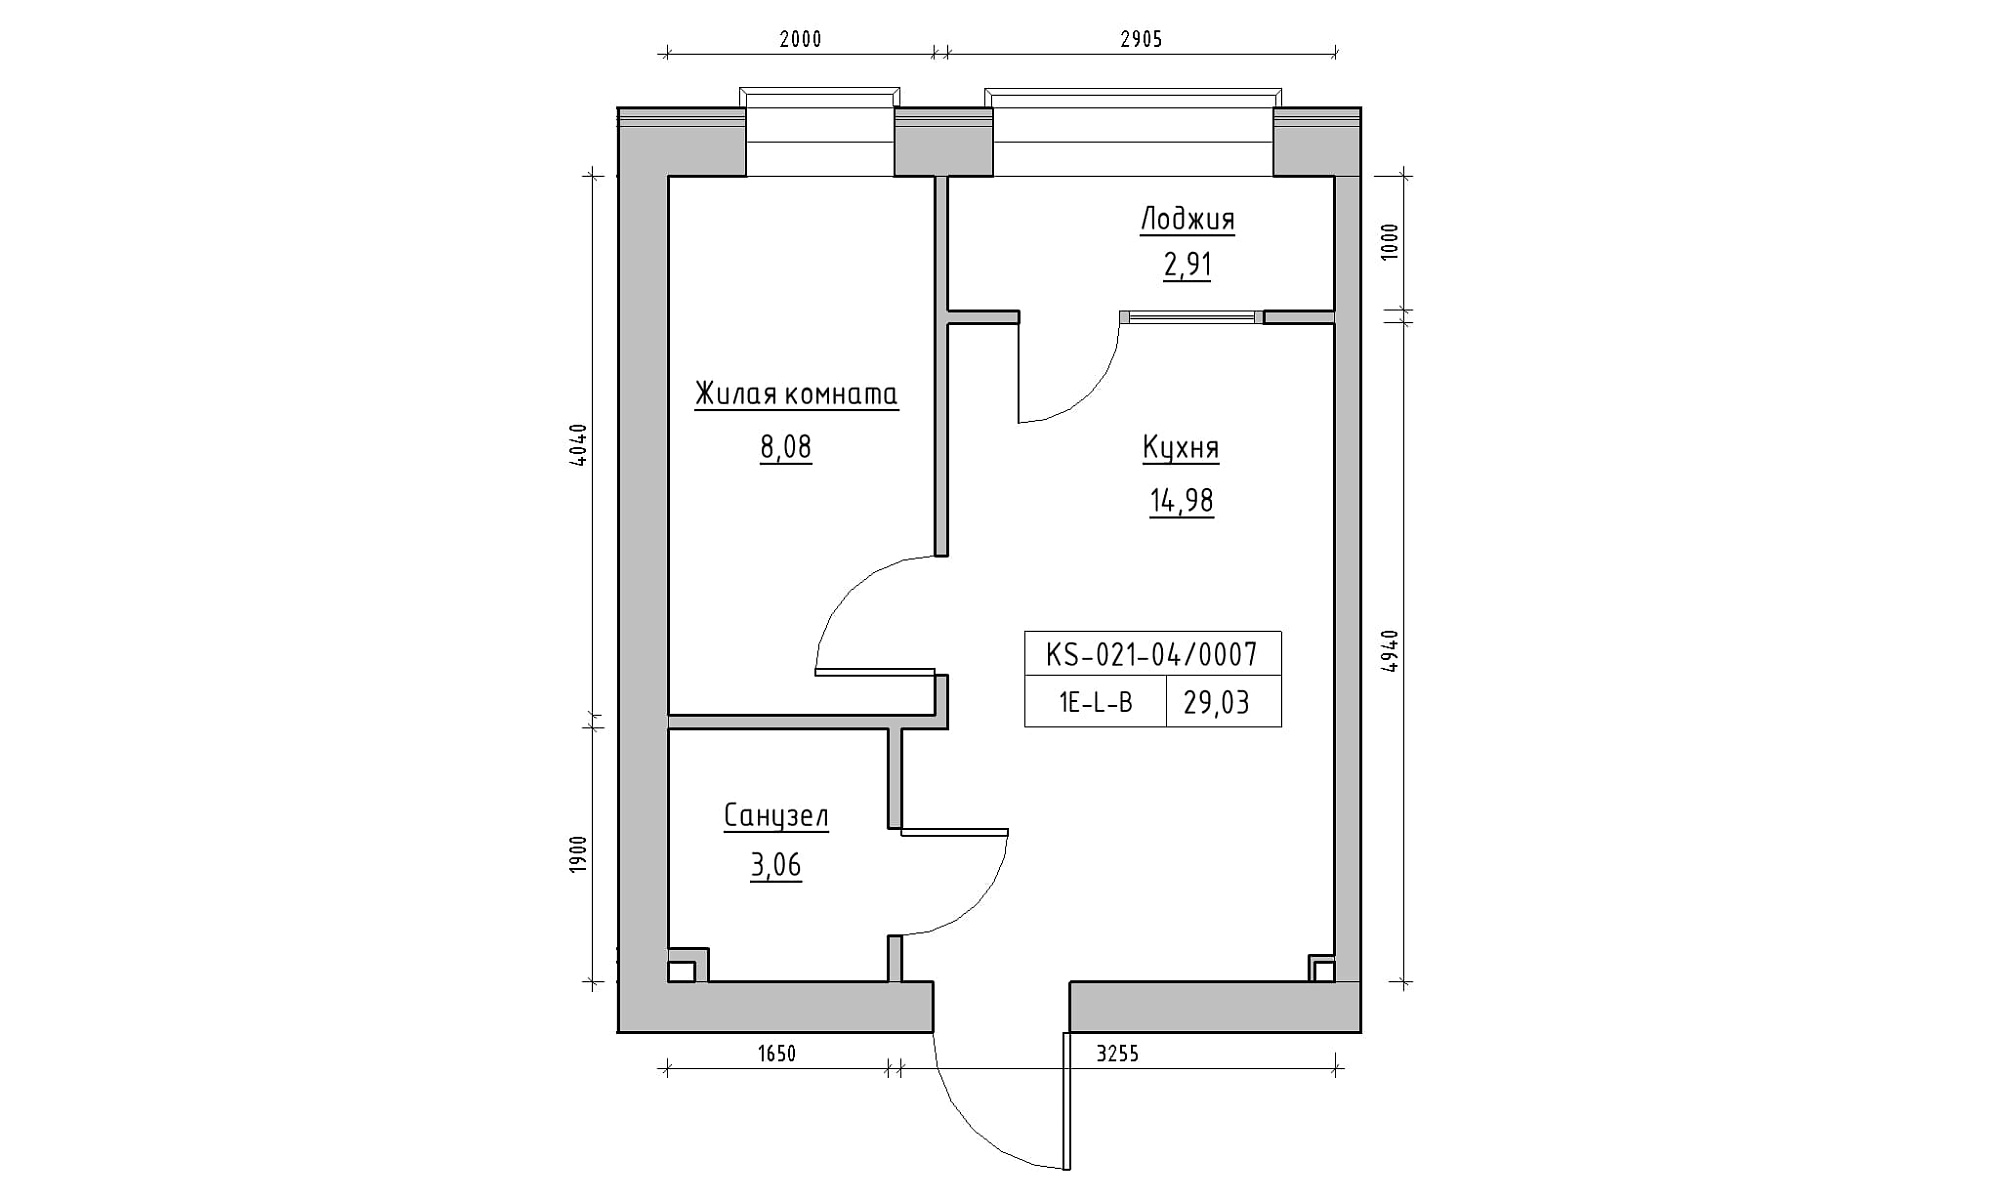 Планування 1-к квартира площею 29.03м2, KS-021-04/0007.